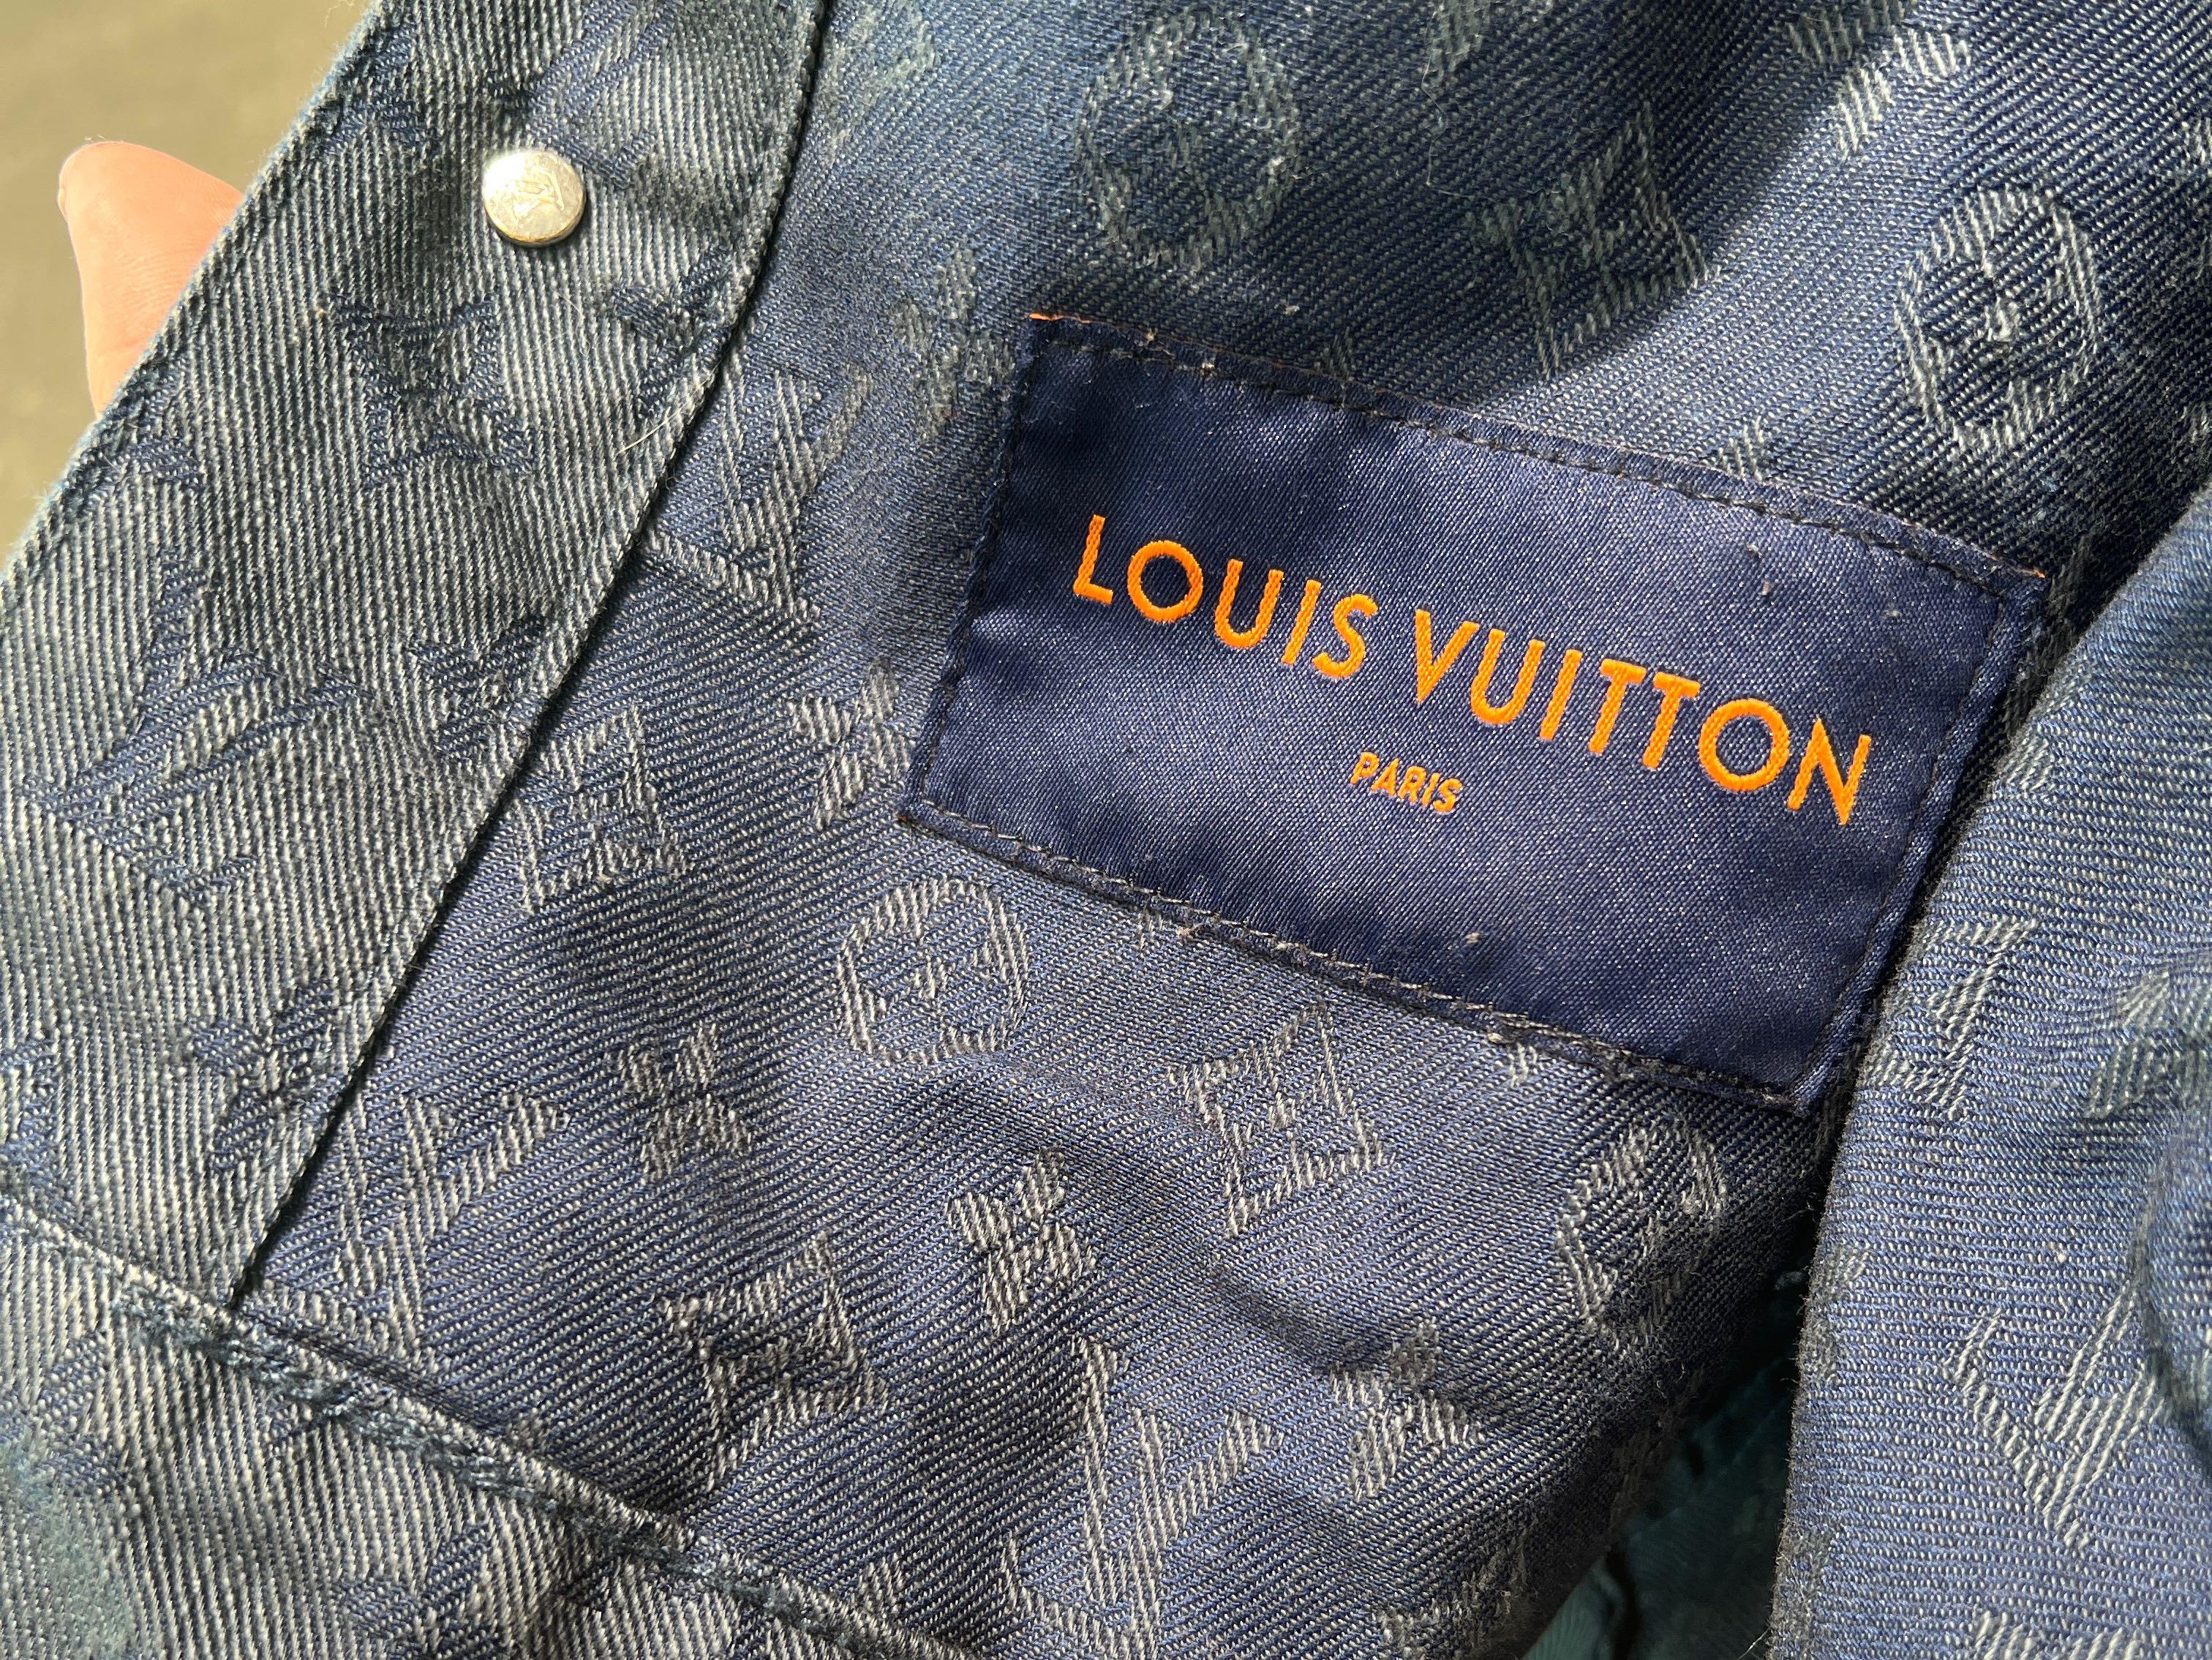 Authentic LOUIS VUITTON Denim Jackets #241-003-205-8562